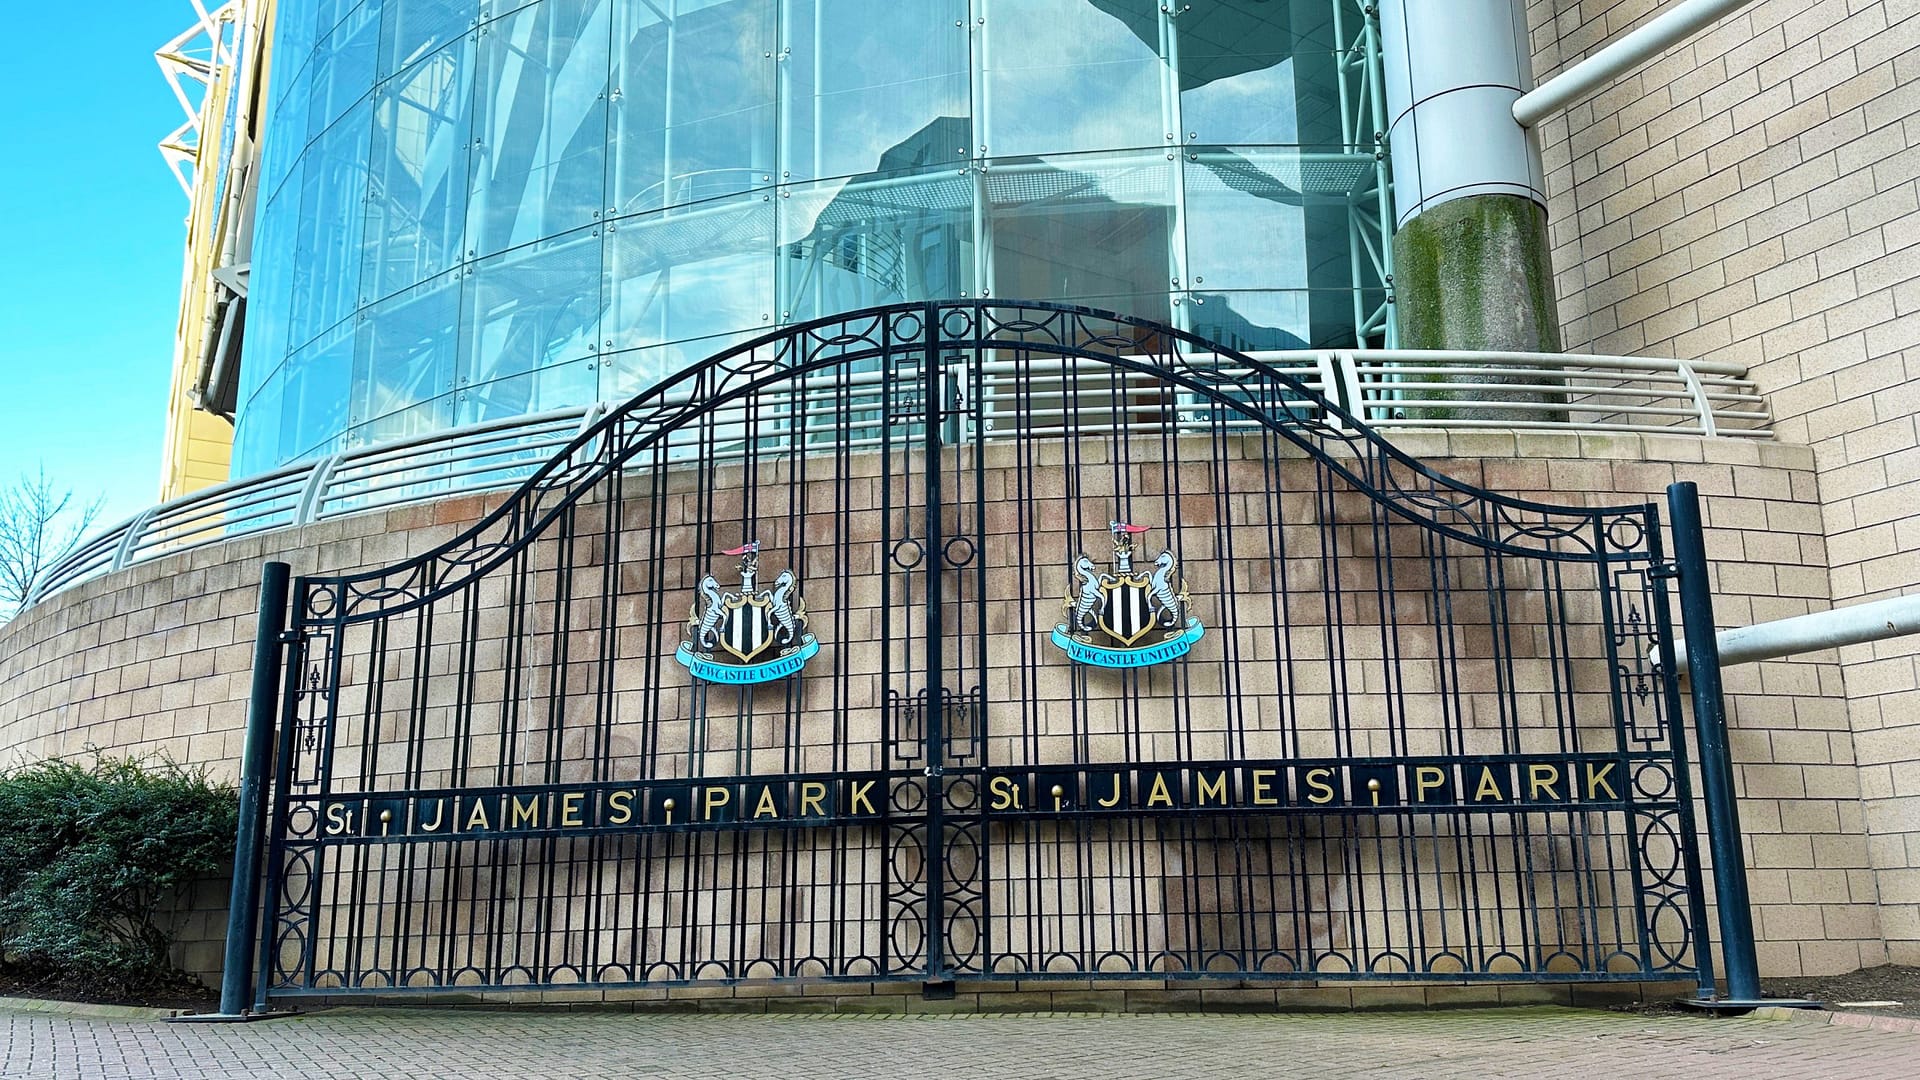 NUFC Gates, St James's Park, Newcastle United